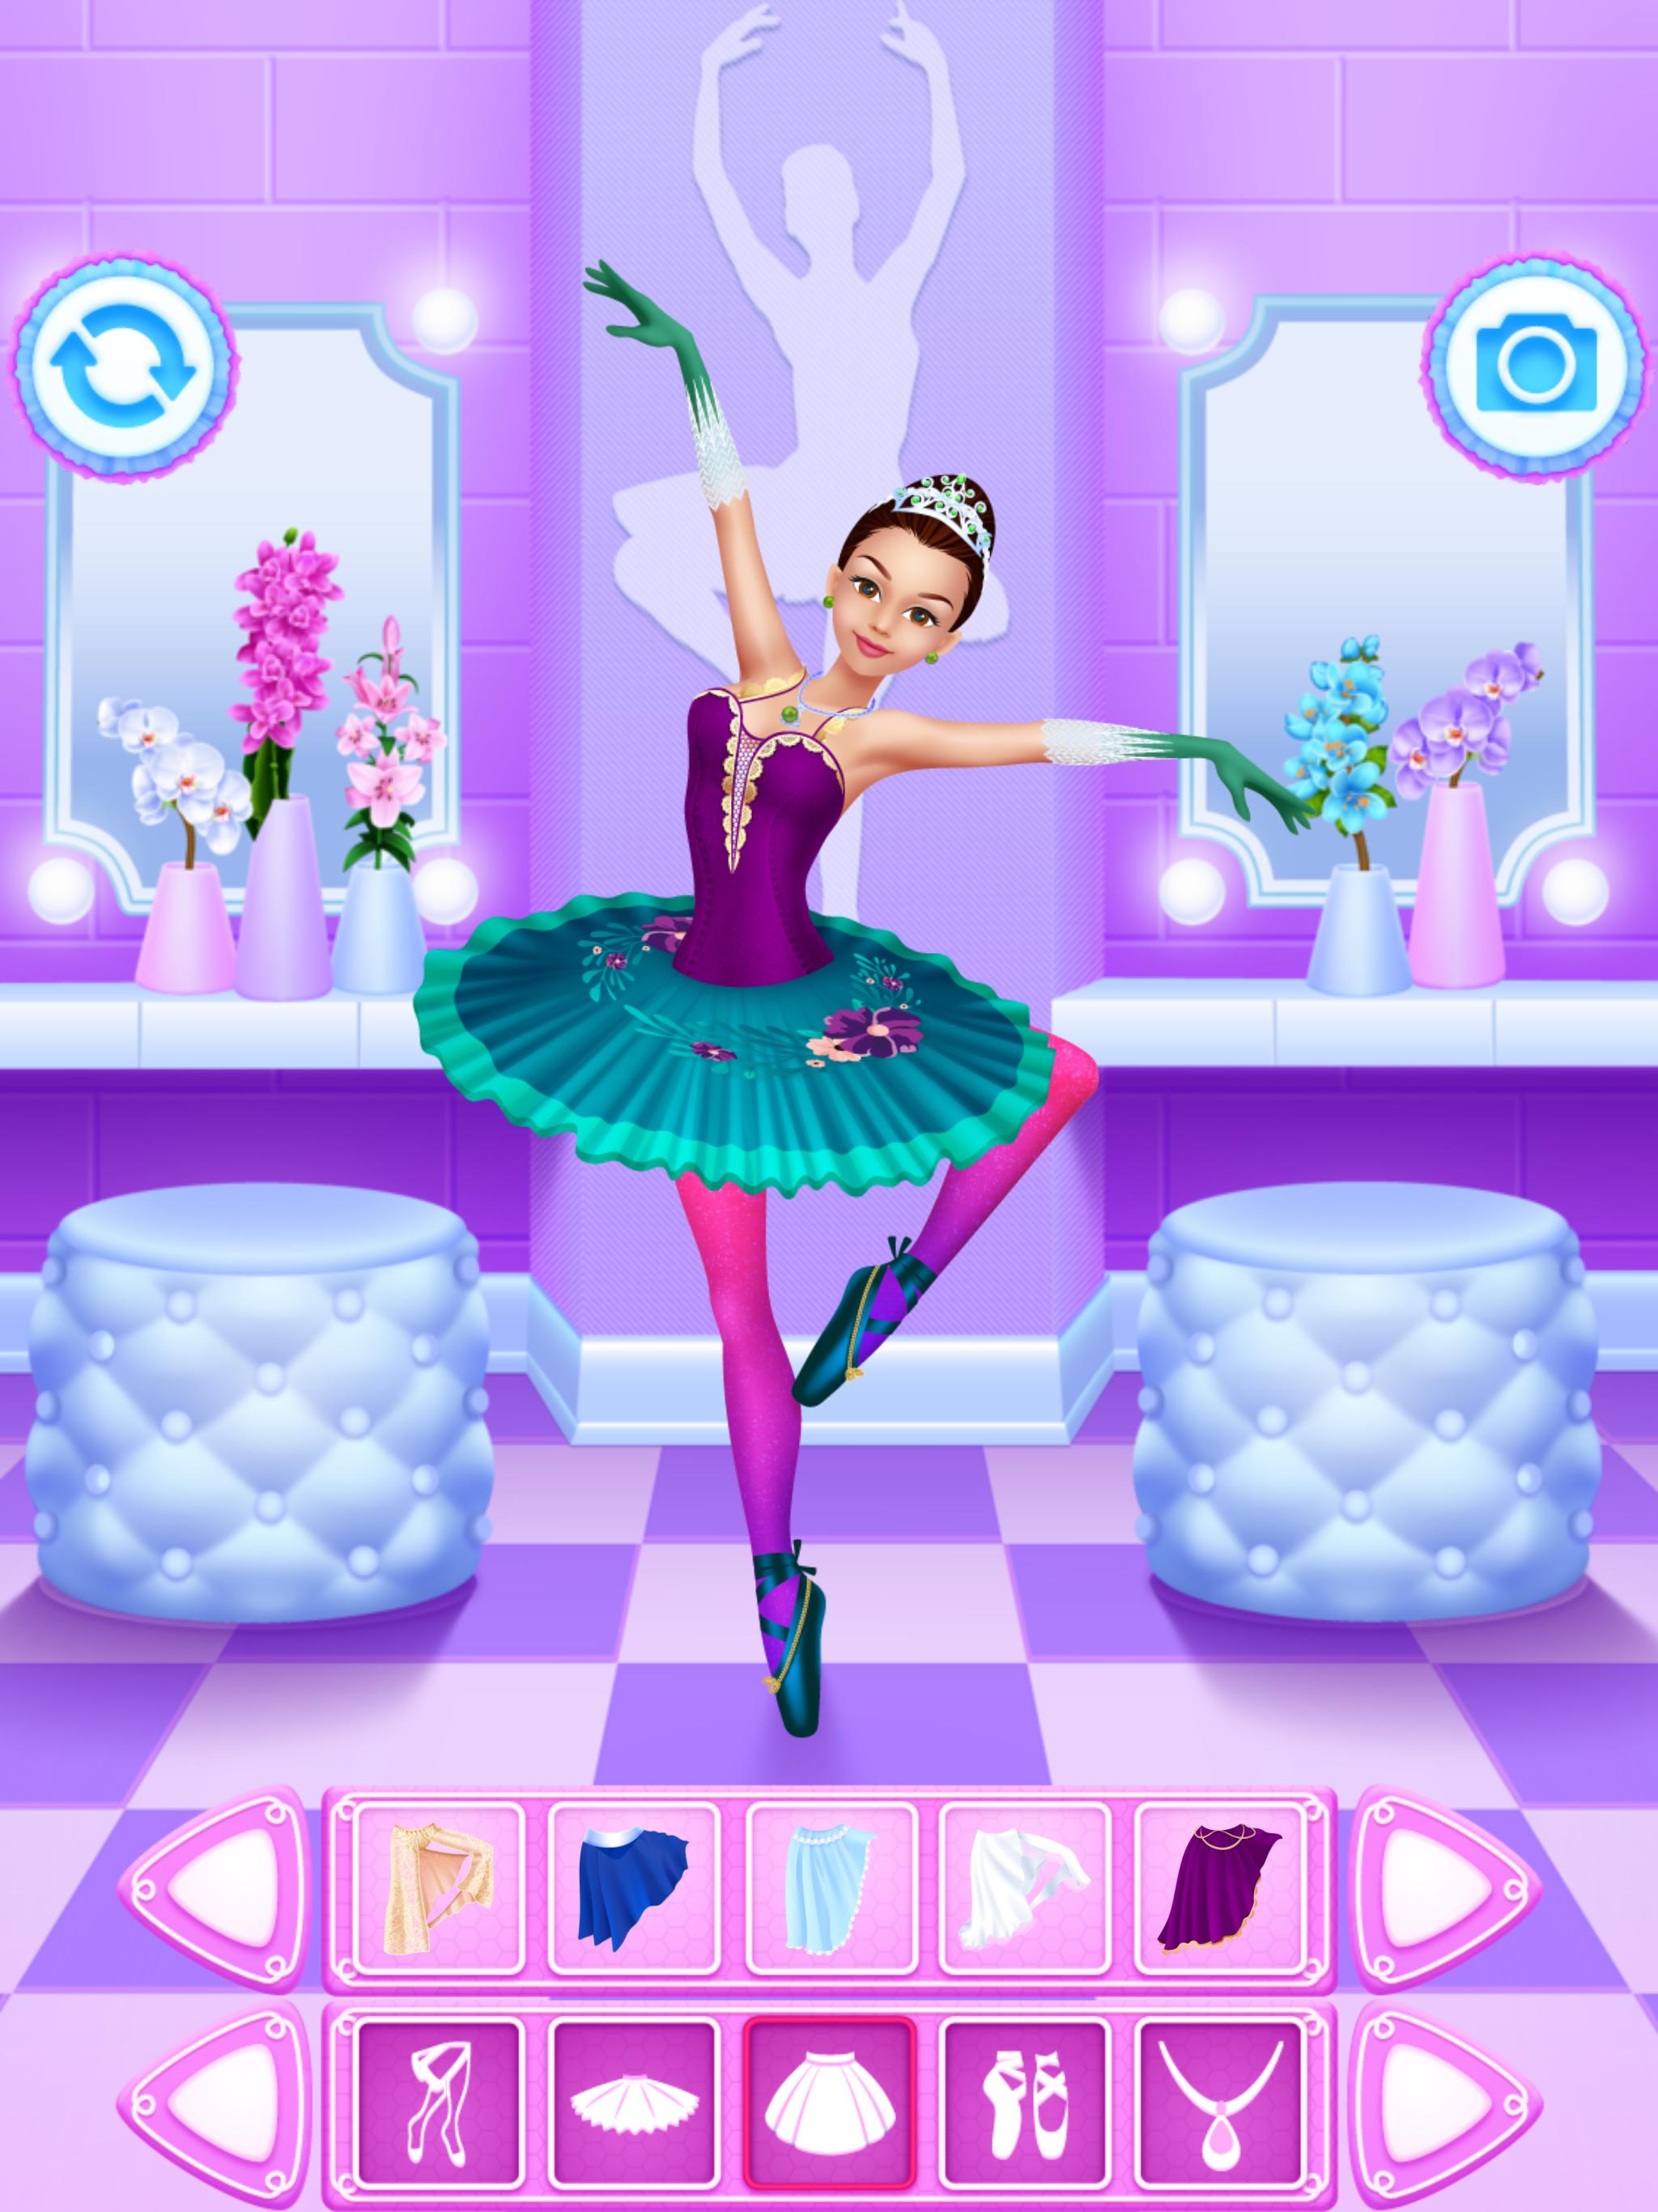 Можно бесплатную игру для девочек. Барби балерина игра. Игра балерина принцесса. Барби балерина игра компьютерная. Переодевалка балерина.